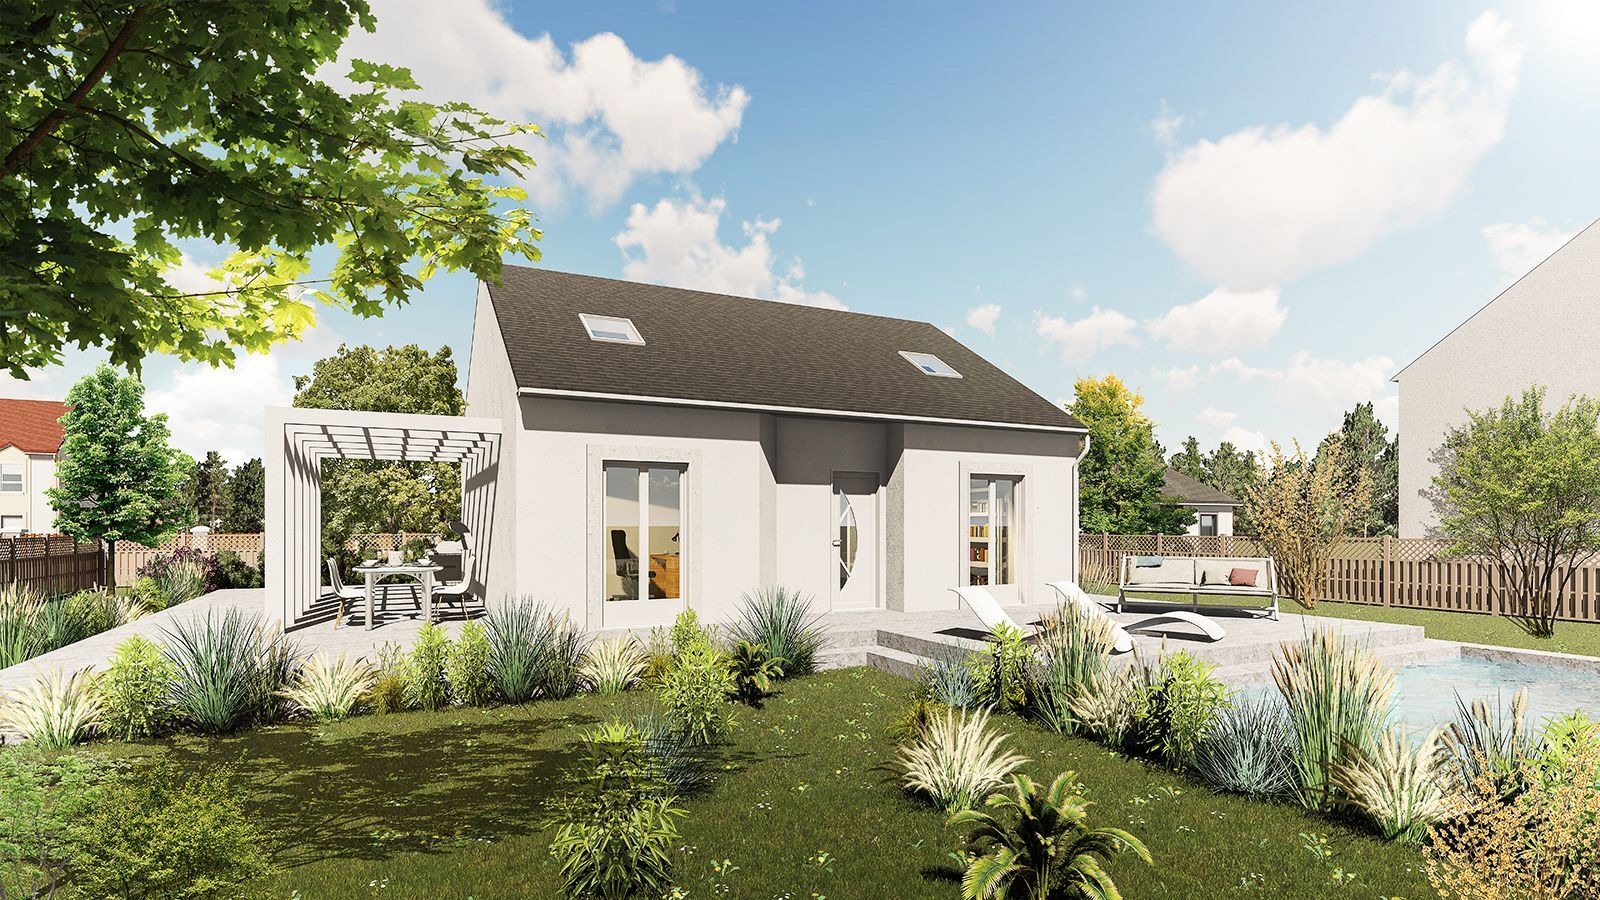 Vente Maison neuve 100 m² à Mantes-la-Jolie 287 907 €